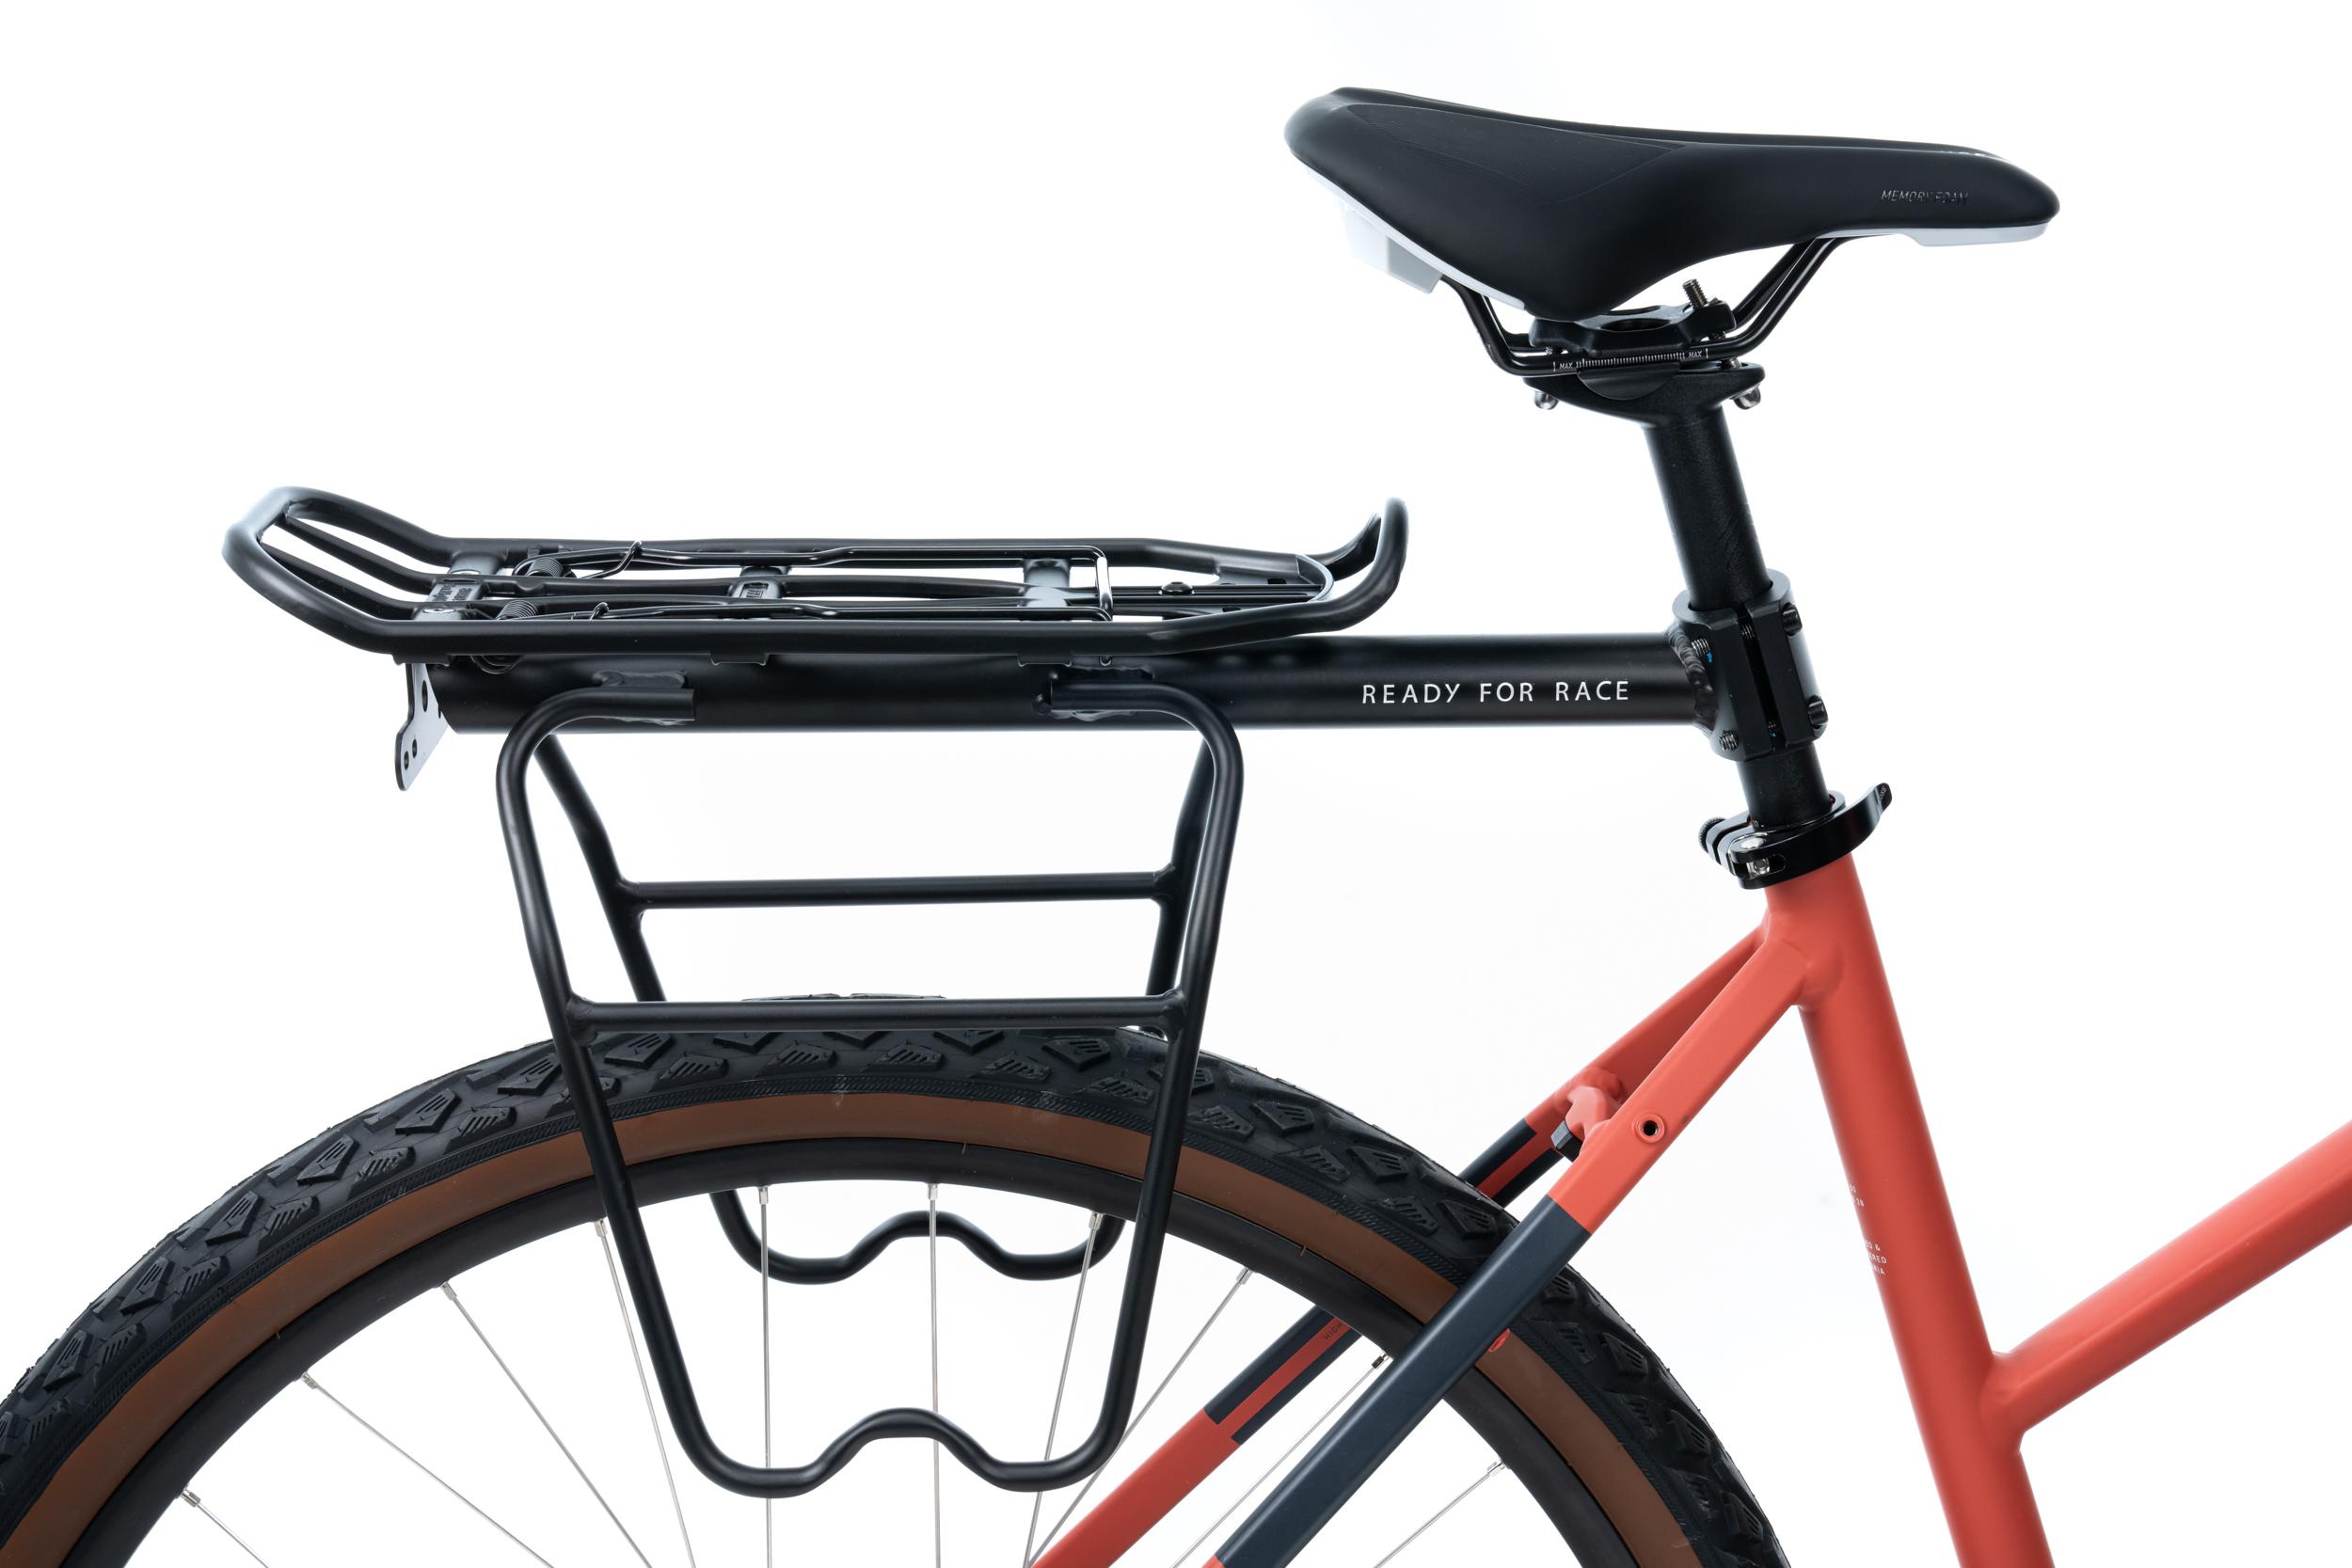 Klickfix Freeliner Porte-carte étanche et rotatif pour voyage vélo